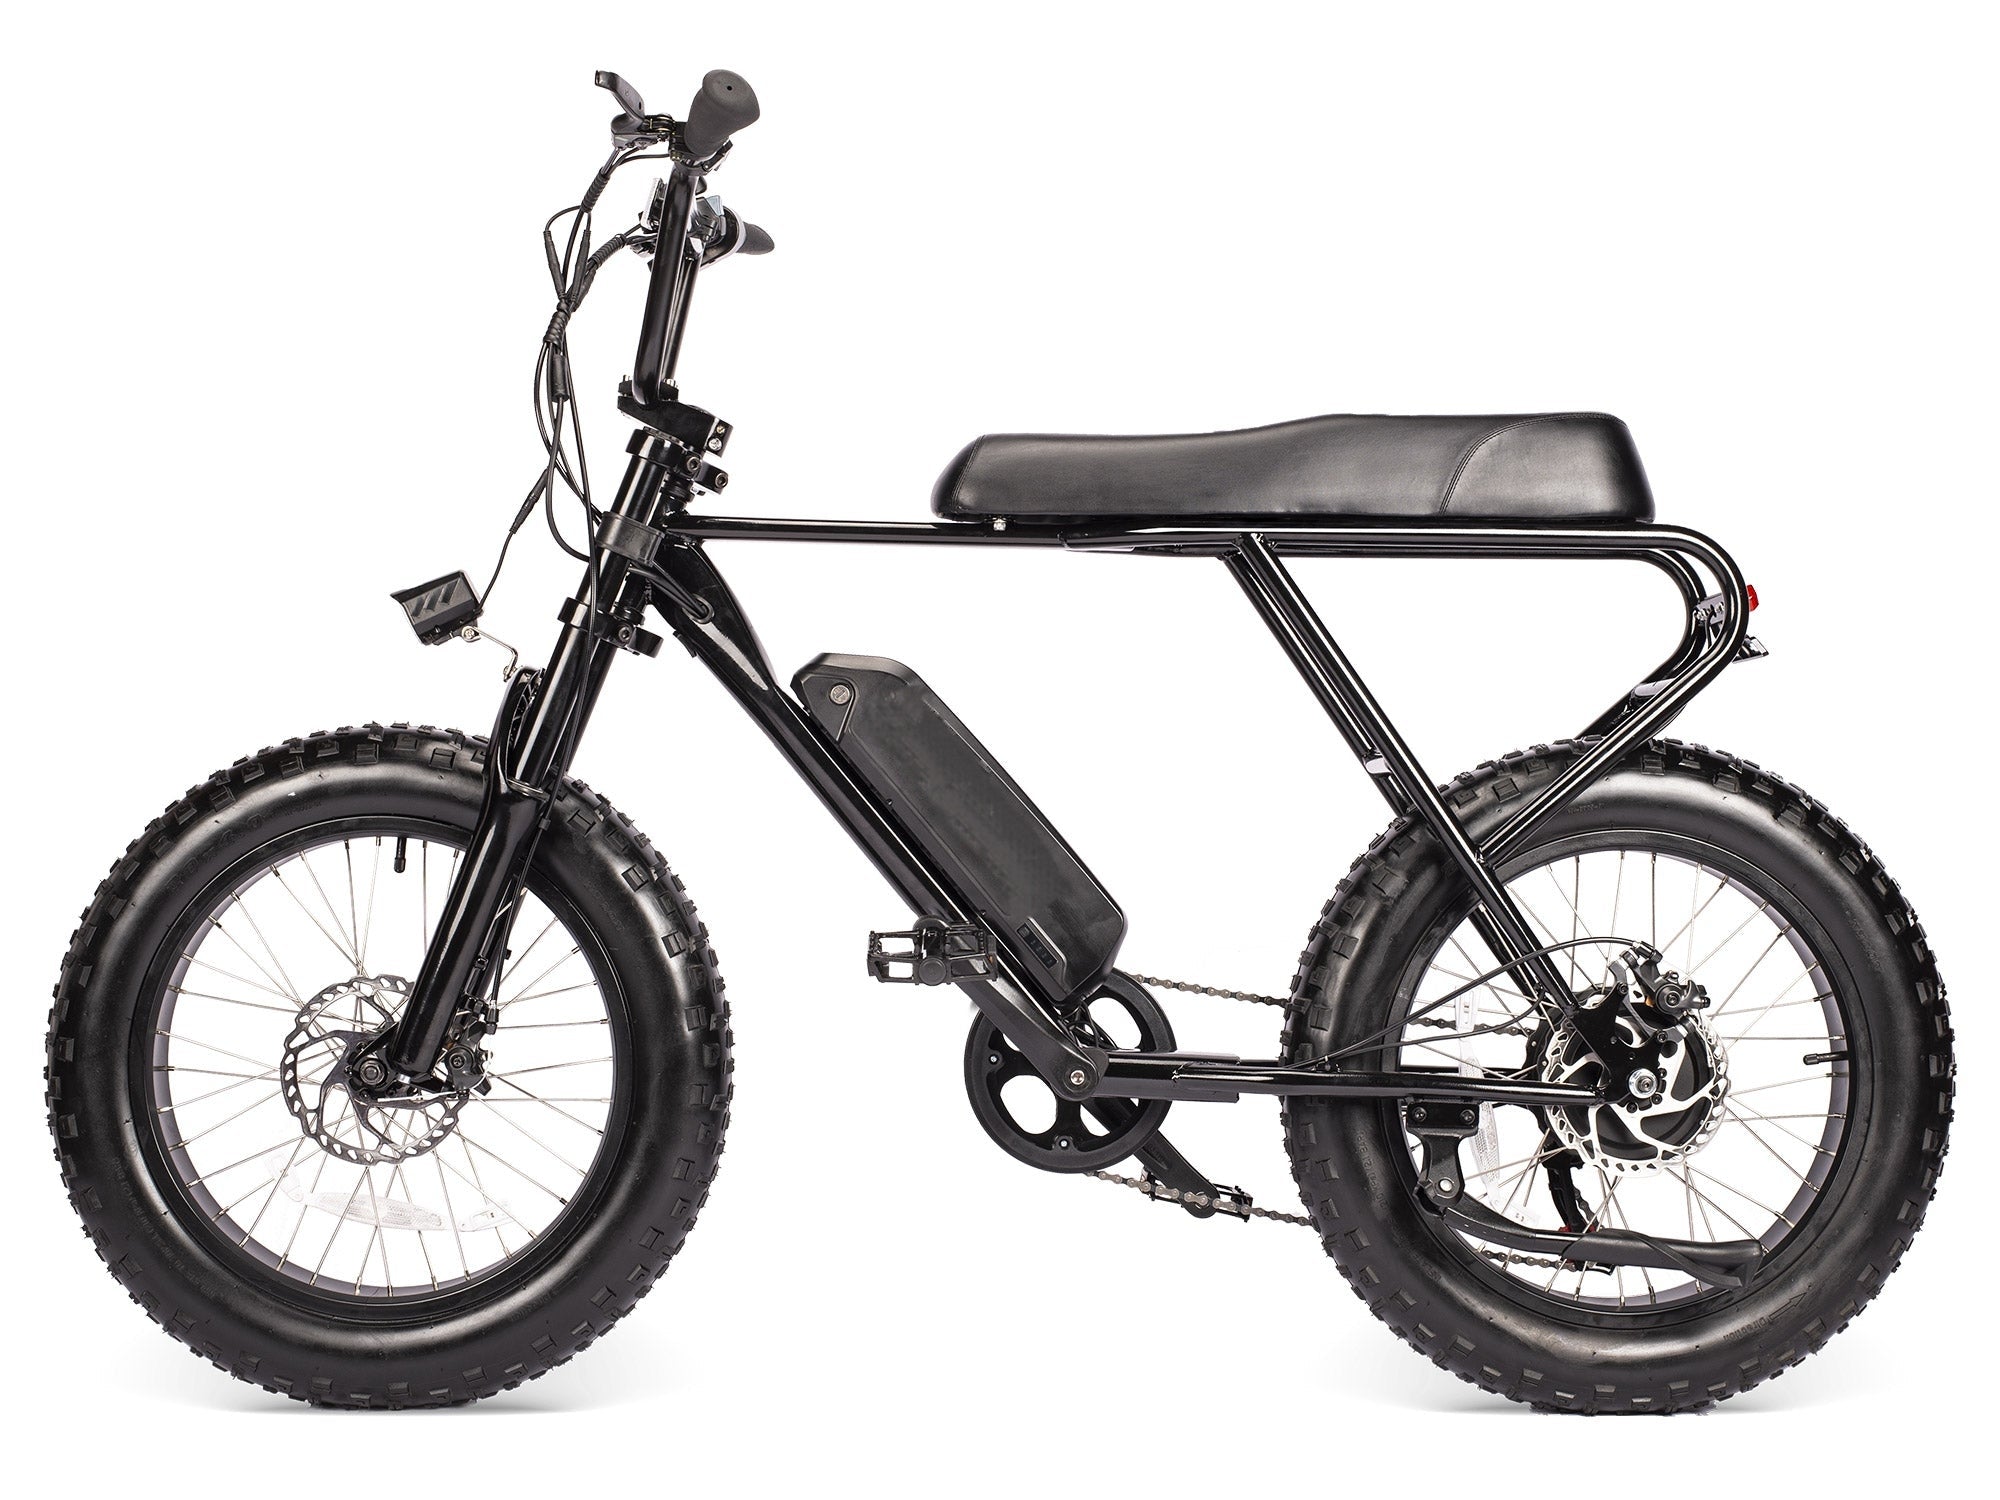 Macfox Mini Swell Vélo électrique, 20Inch Fat Tires Vélo électrique tout-terrain, noir